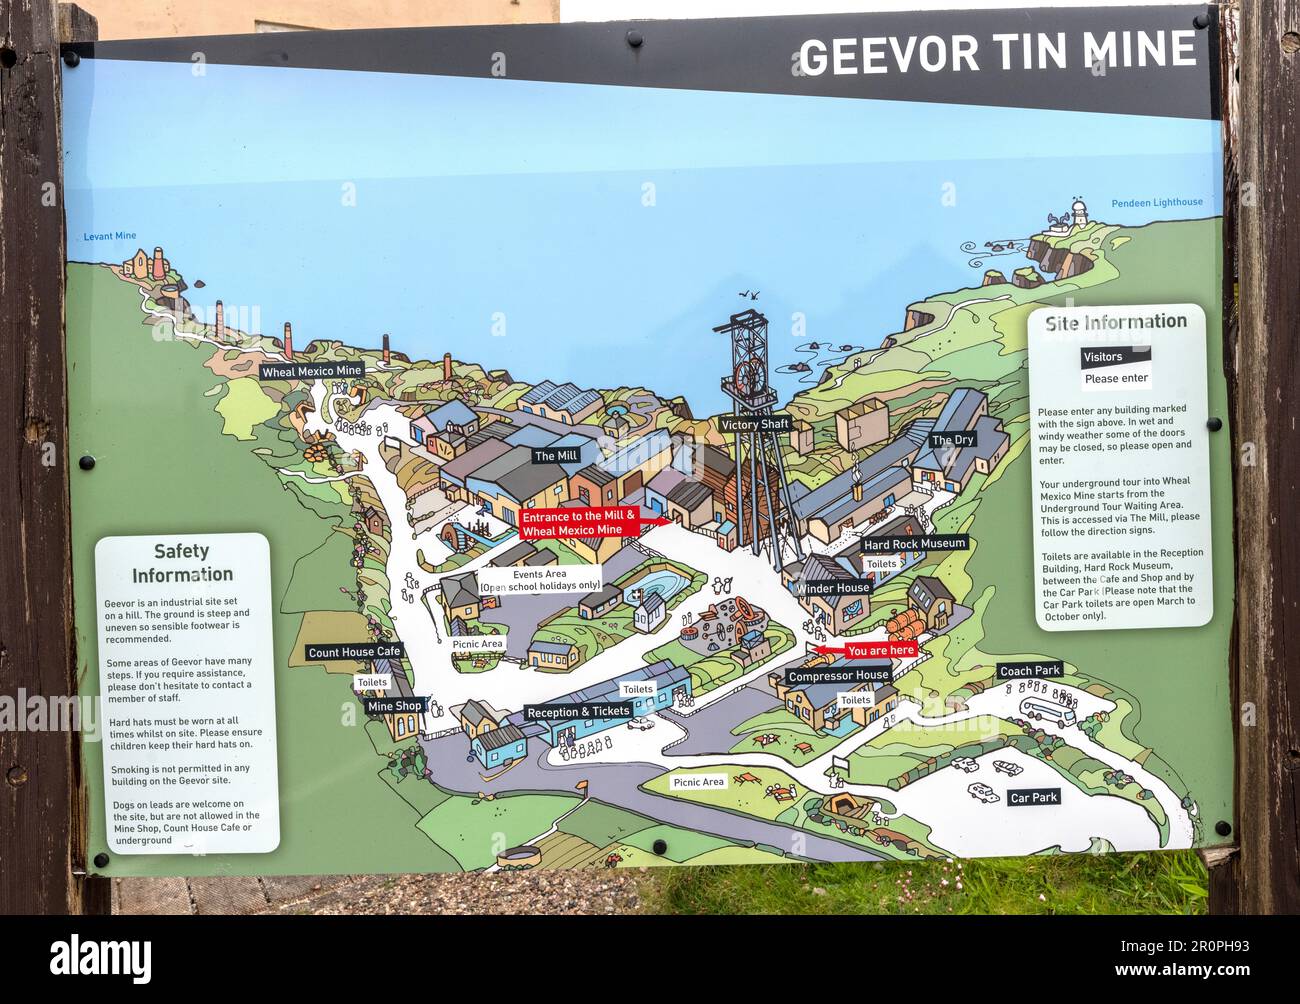 Geever Tin Mine - museo - Pendeen, Penzance, Cornovaglia, Inghilterra, Regno Unito - scheda di informazioni turistiche e per i visitatori. Foto Stock